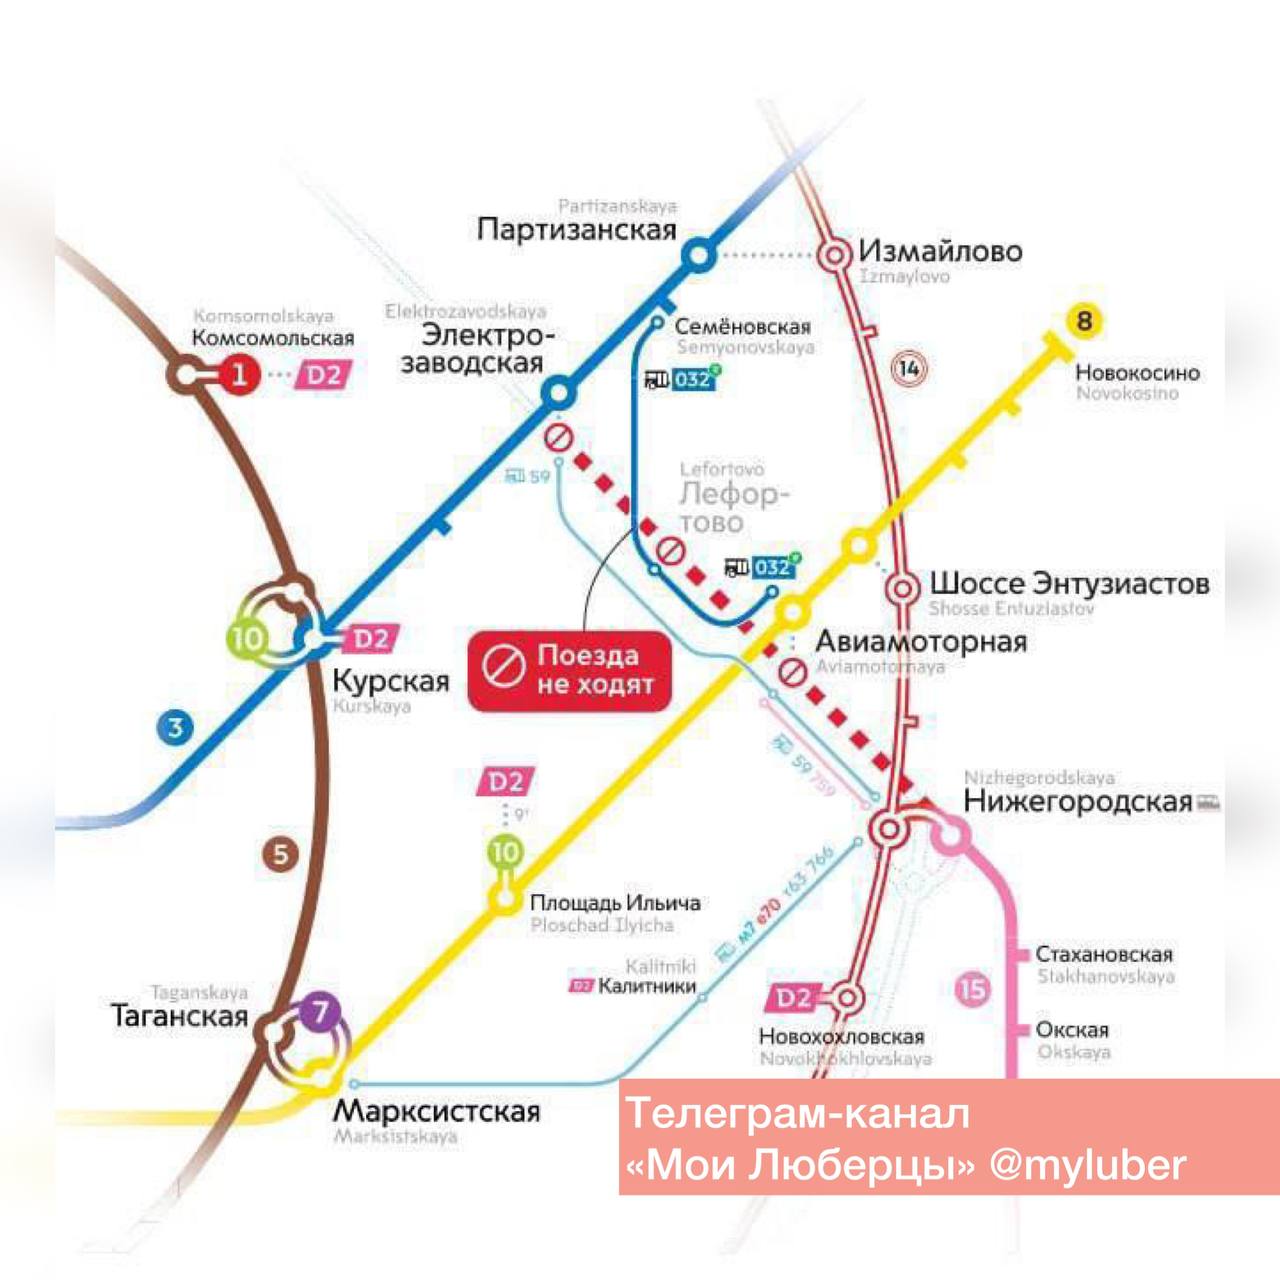 глубина метро в москве